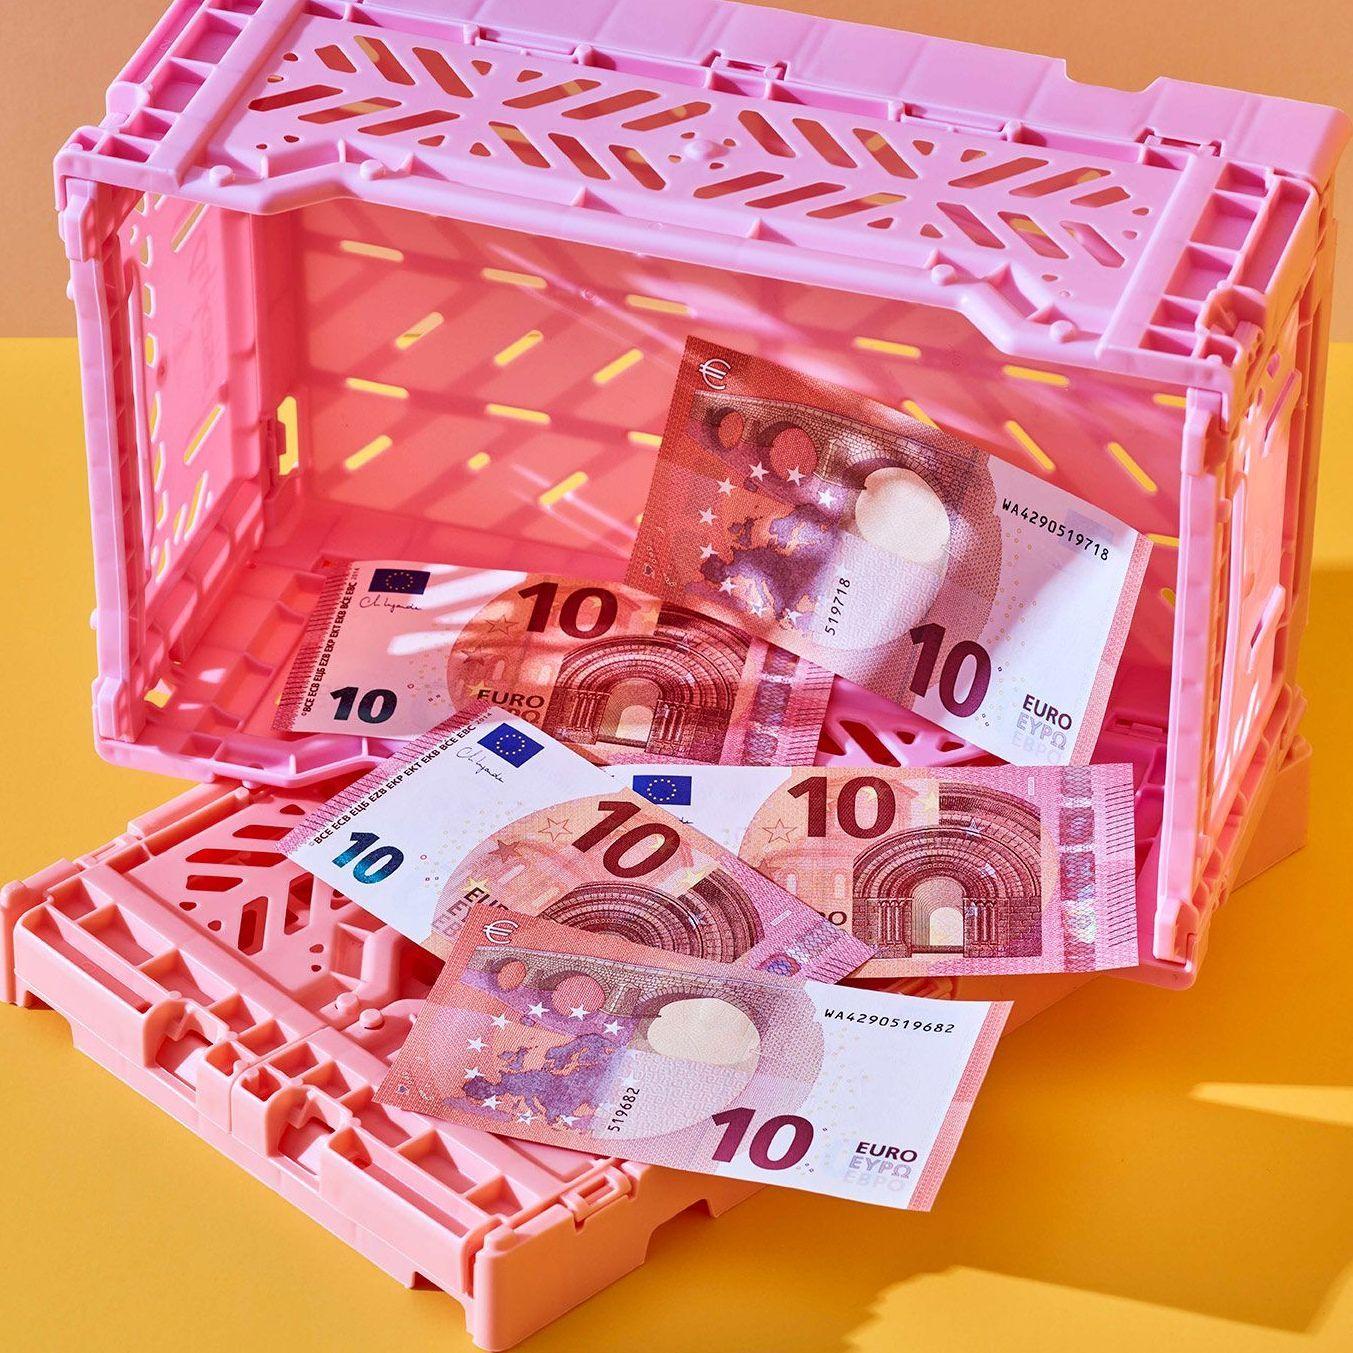 Inszeniertes Stillleben mit mehreren 10 Euro Scheinen. Sie sind in einem pinken, hochkant gestellten Plastikkiste drapiert. 